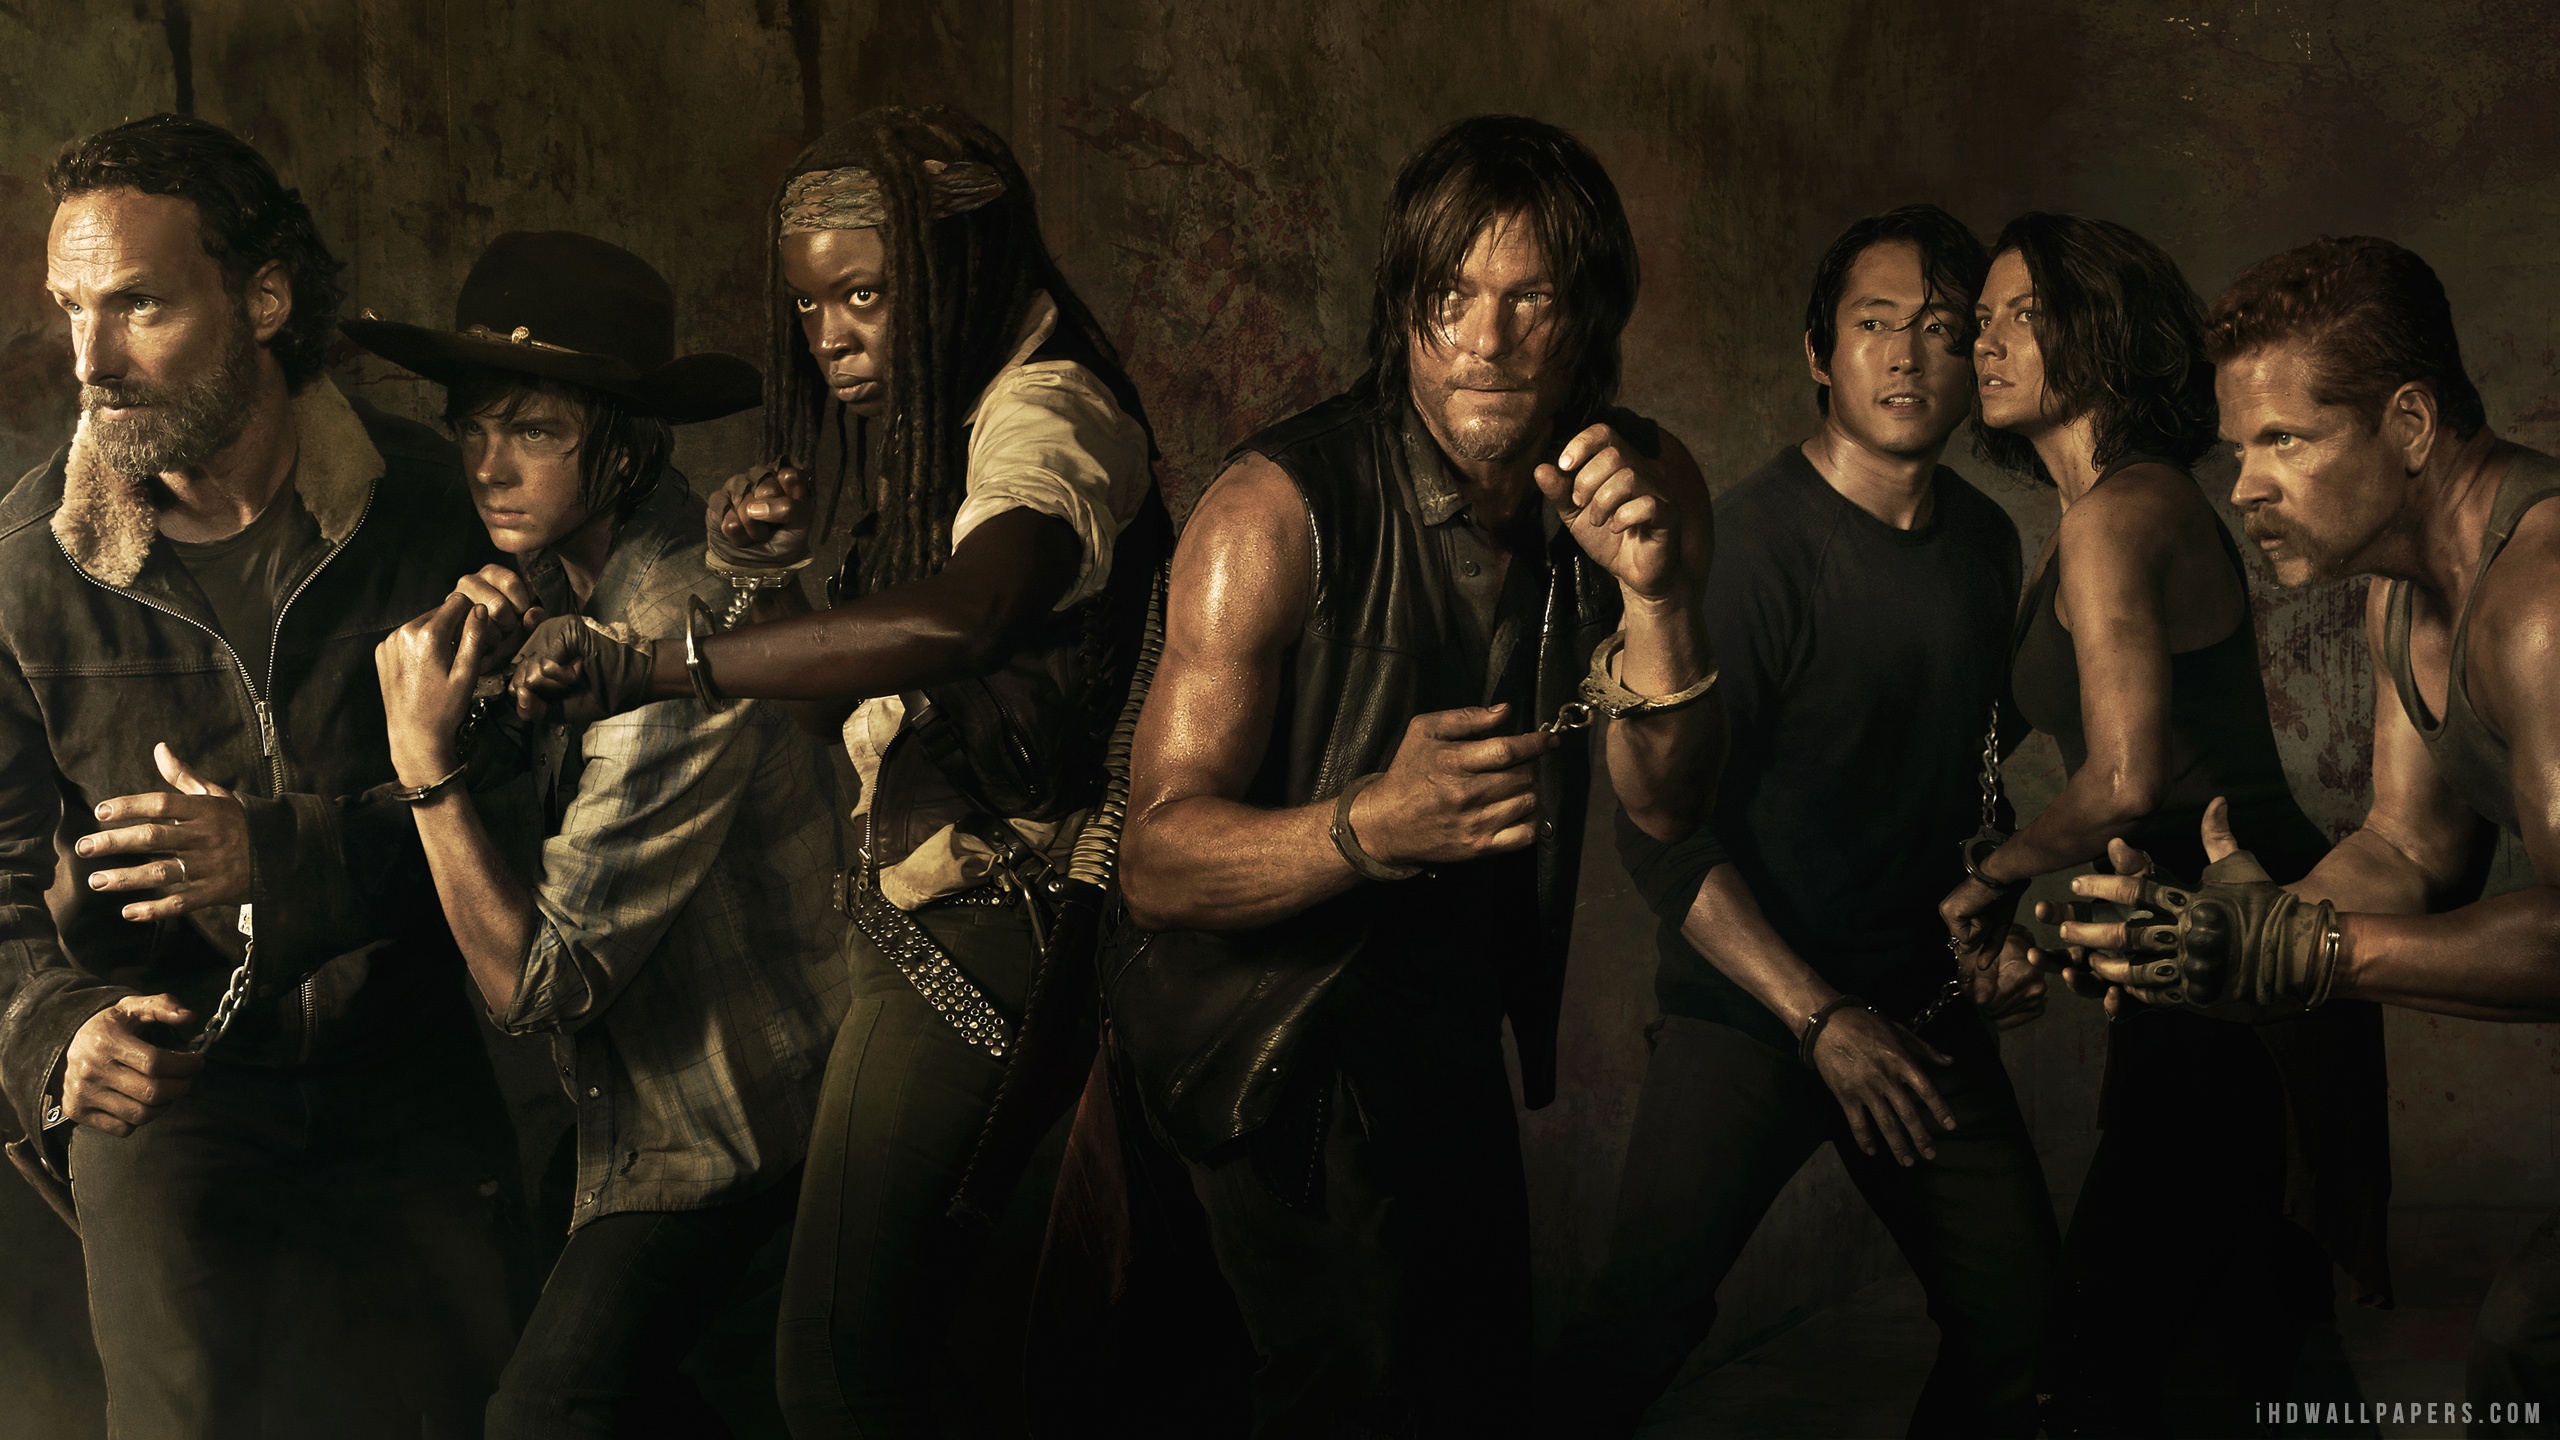 Free download The Walking Dead Season 5 Poster HD Wallpaper iHD